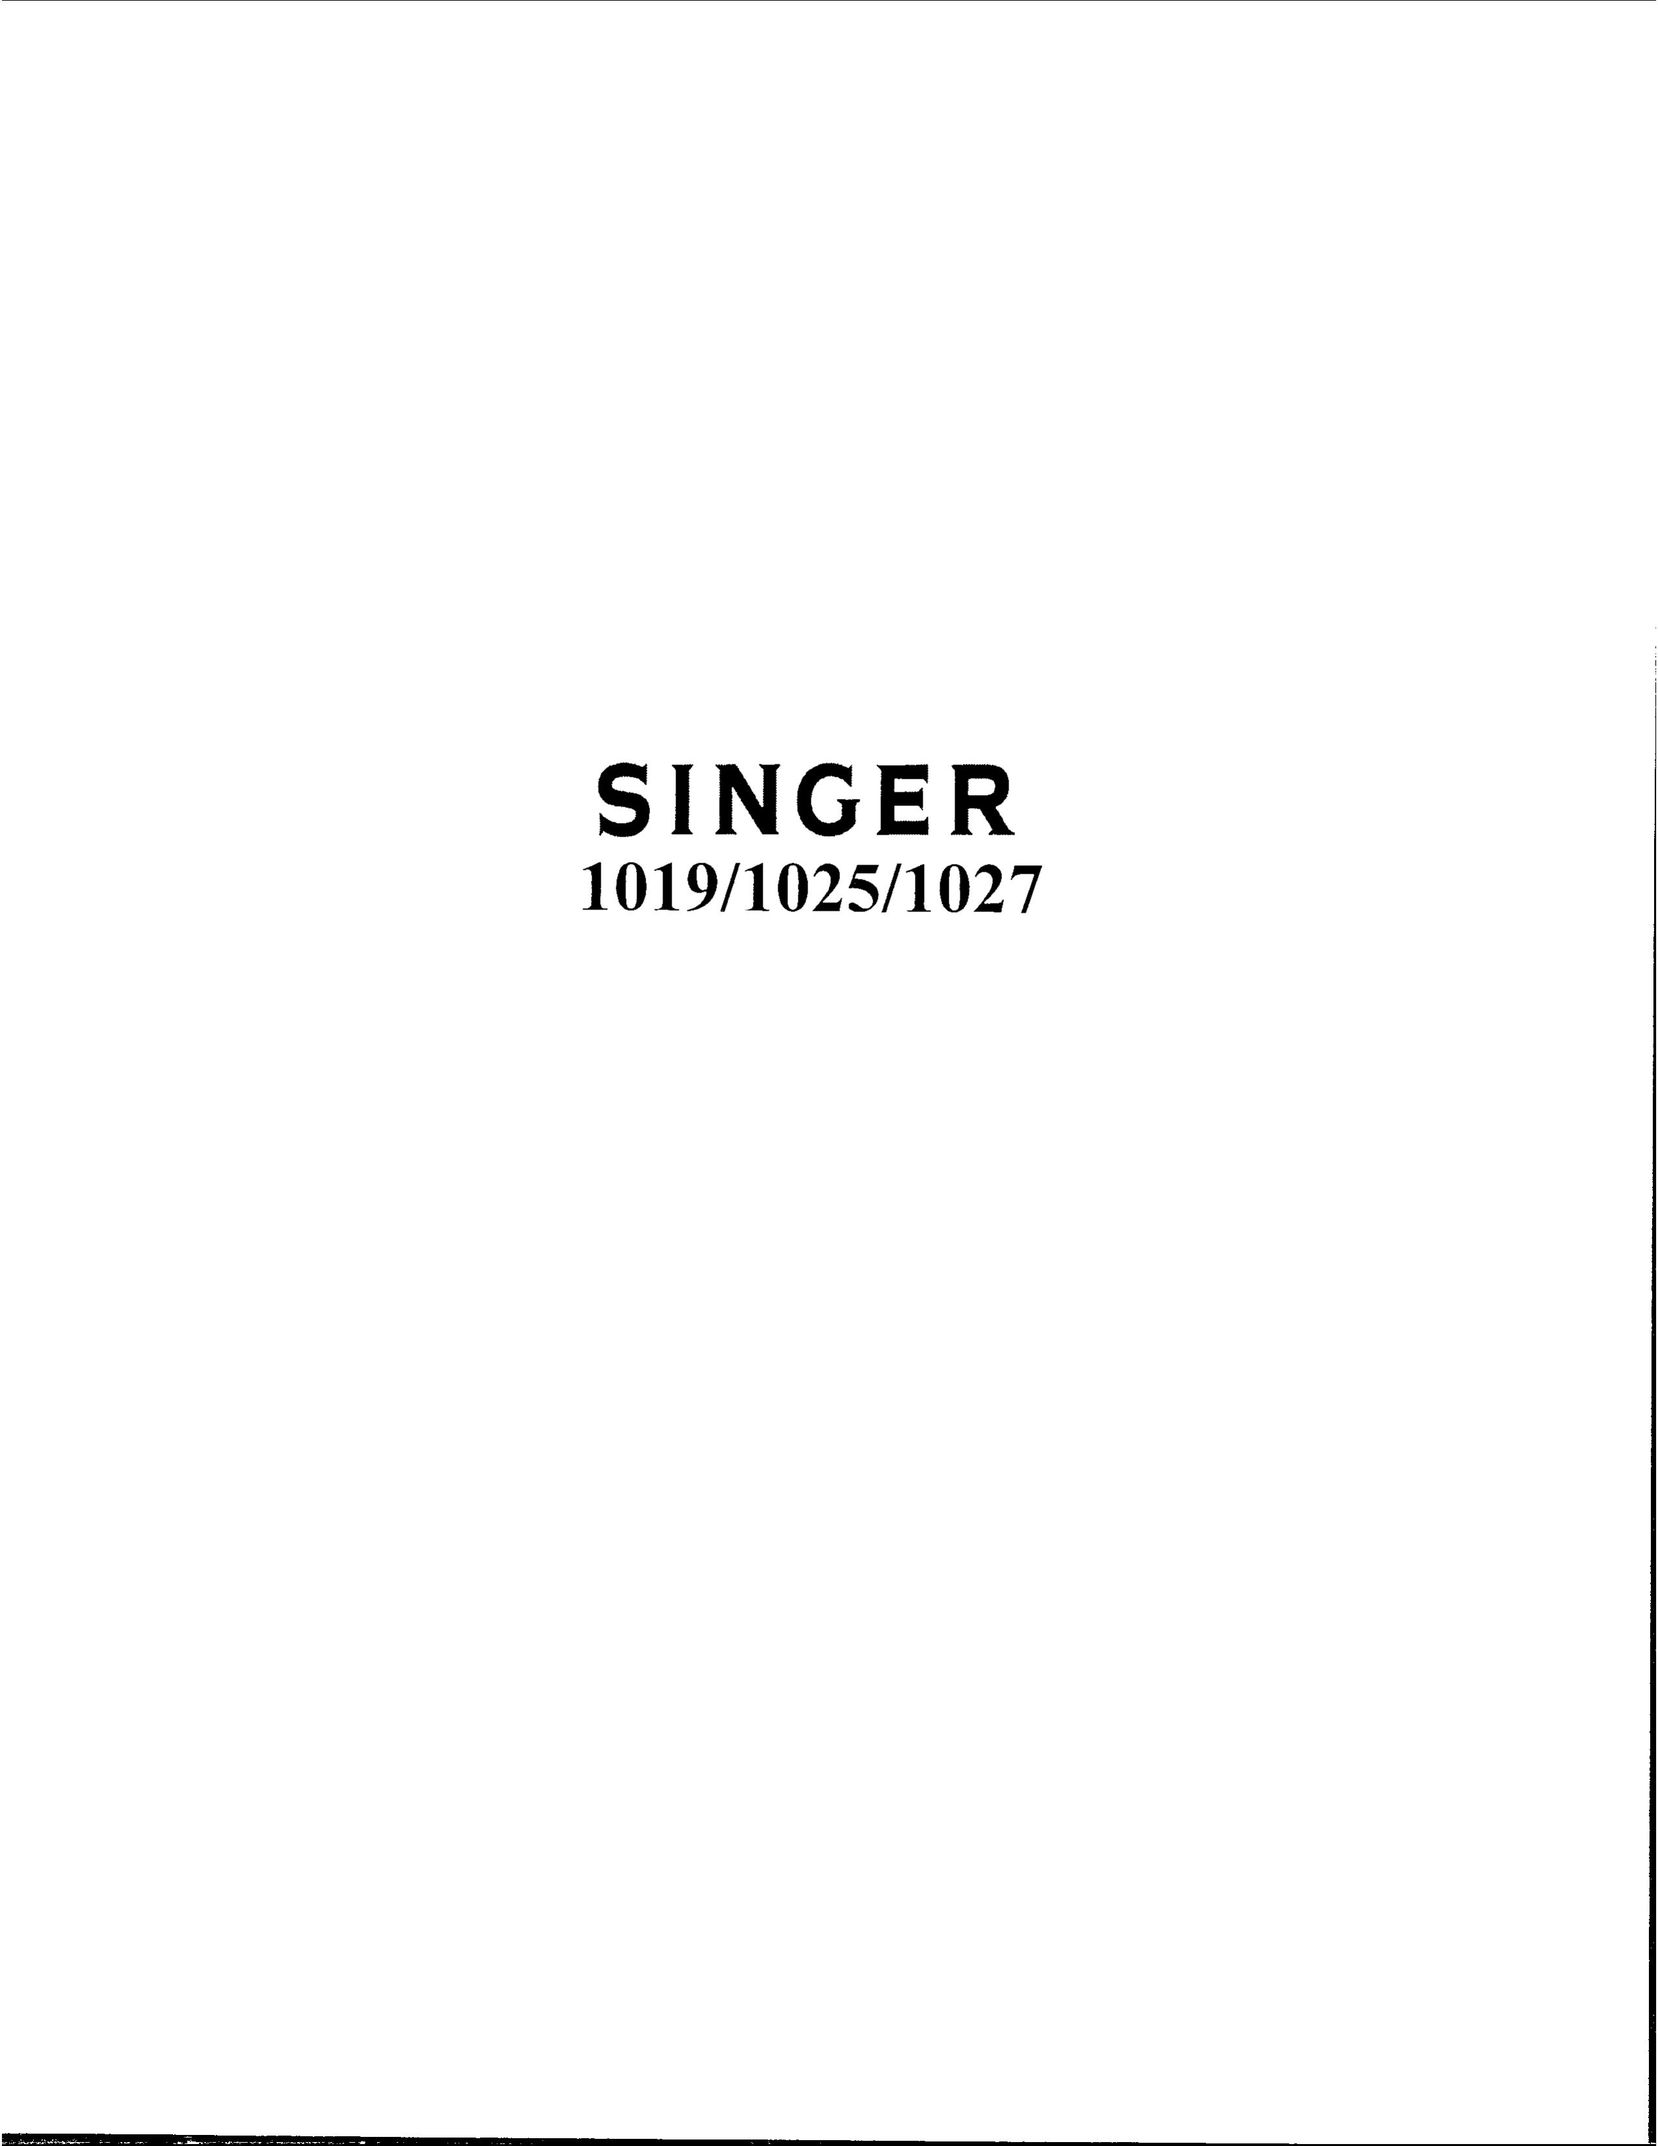 Singer 1019 Sewing Machine User Manual